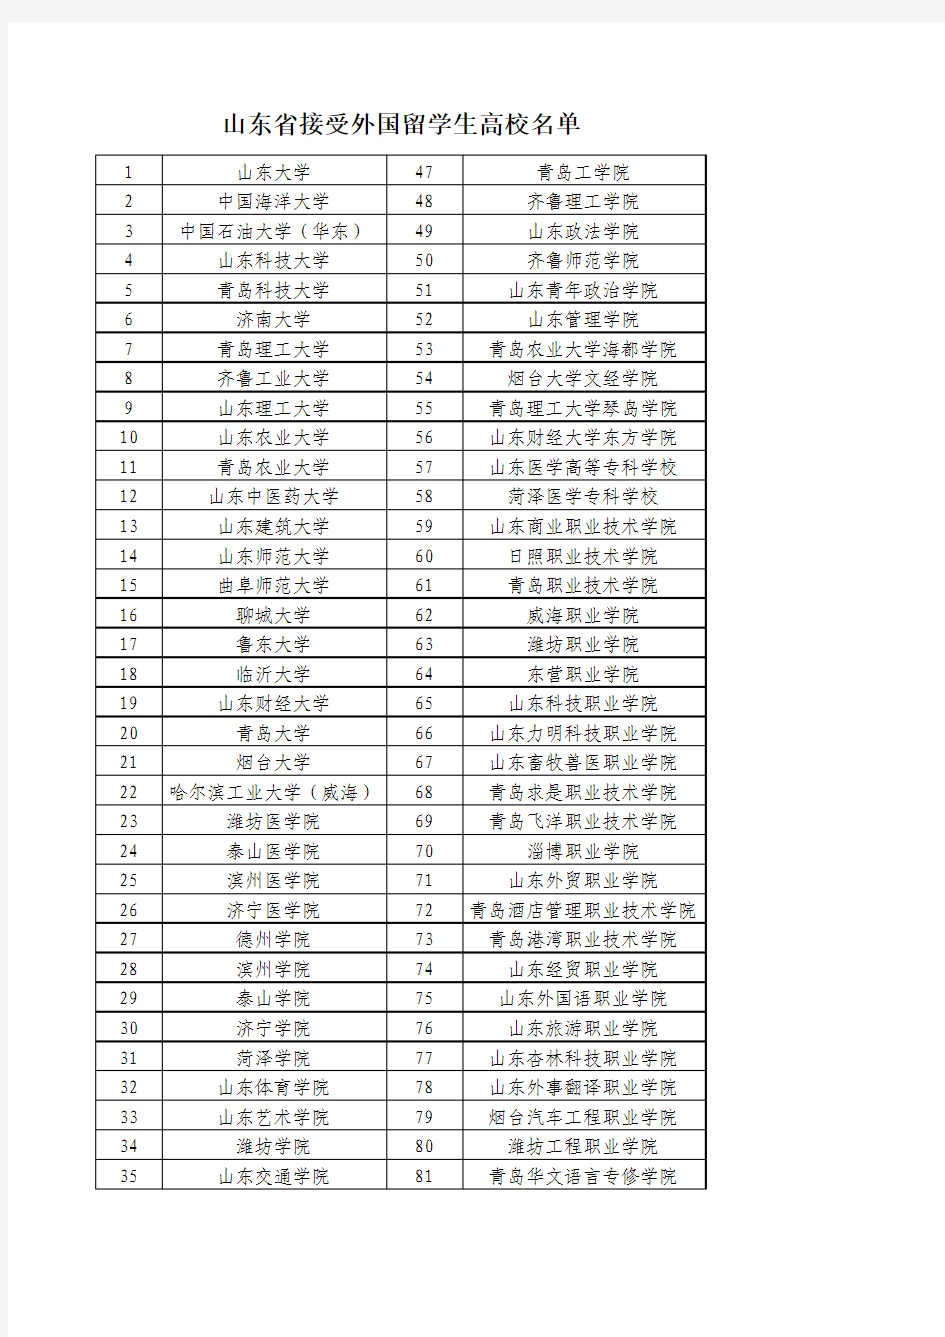 山东省接受外国留学生高校名单